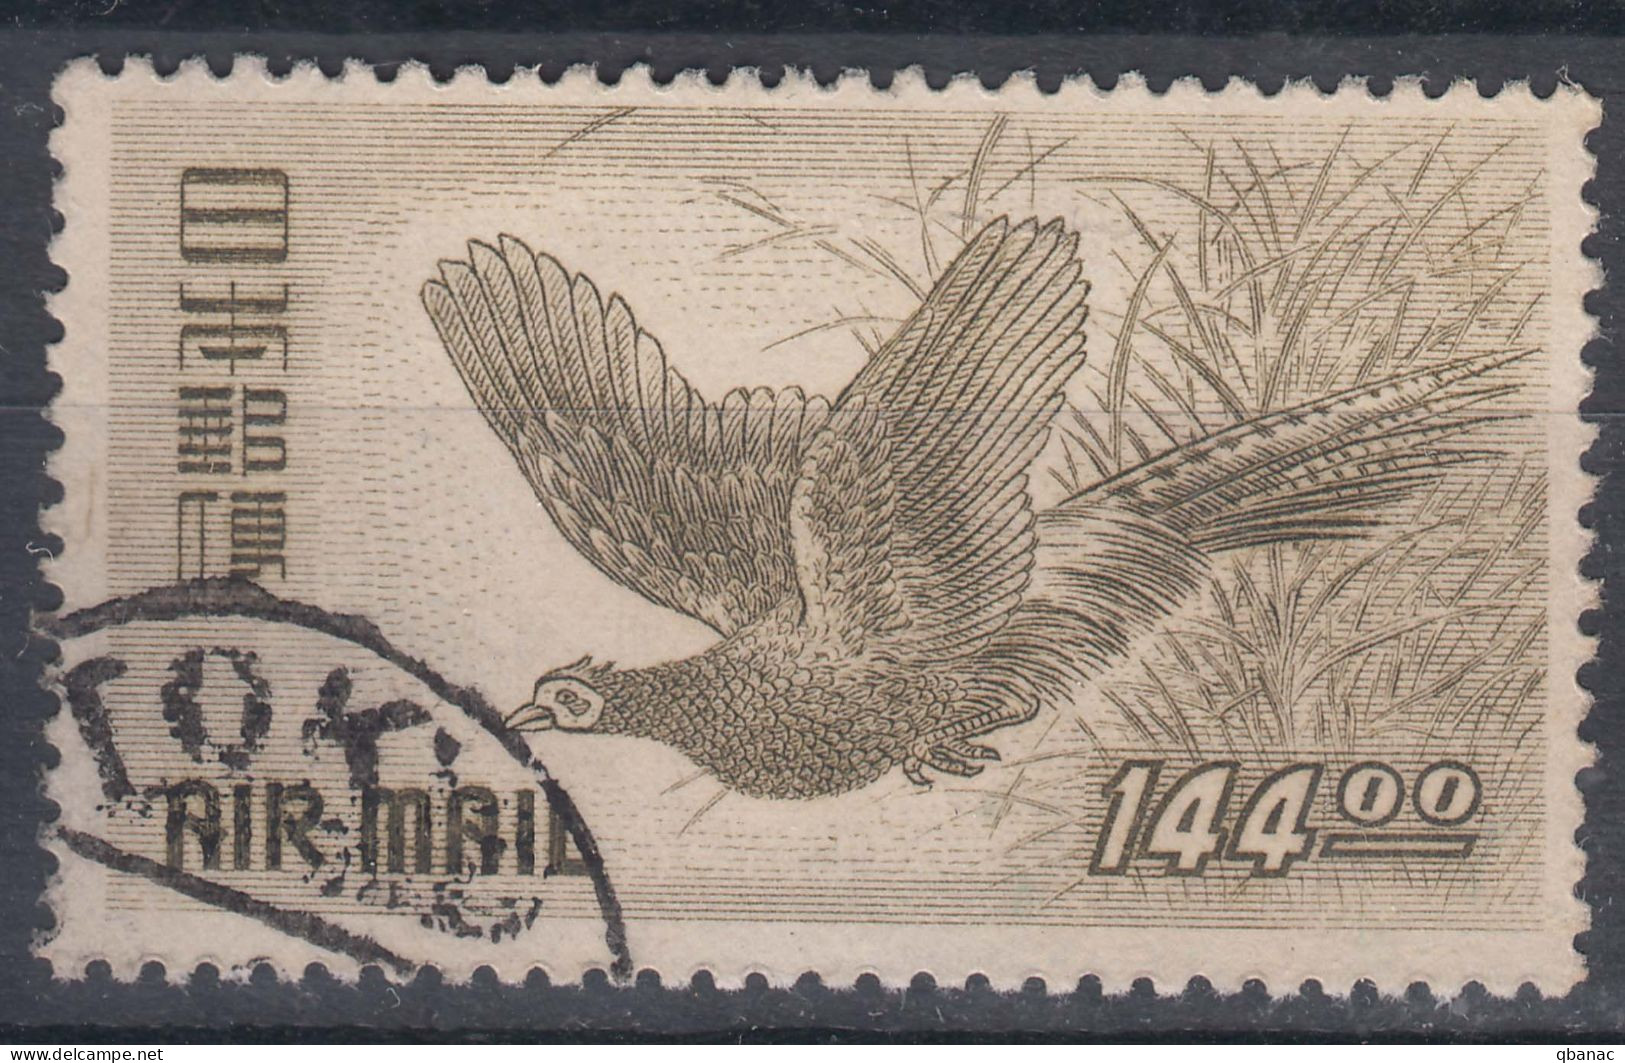 Japan 1950 Birds Airmail Mi#496 Used - Usati